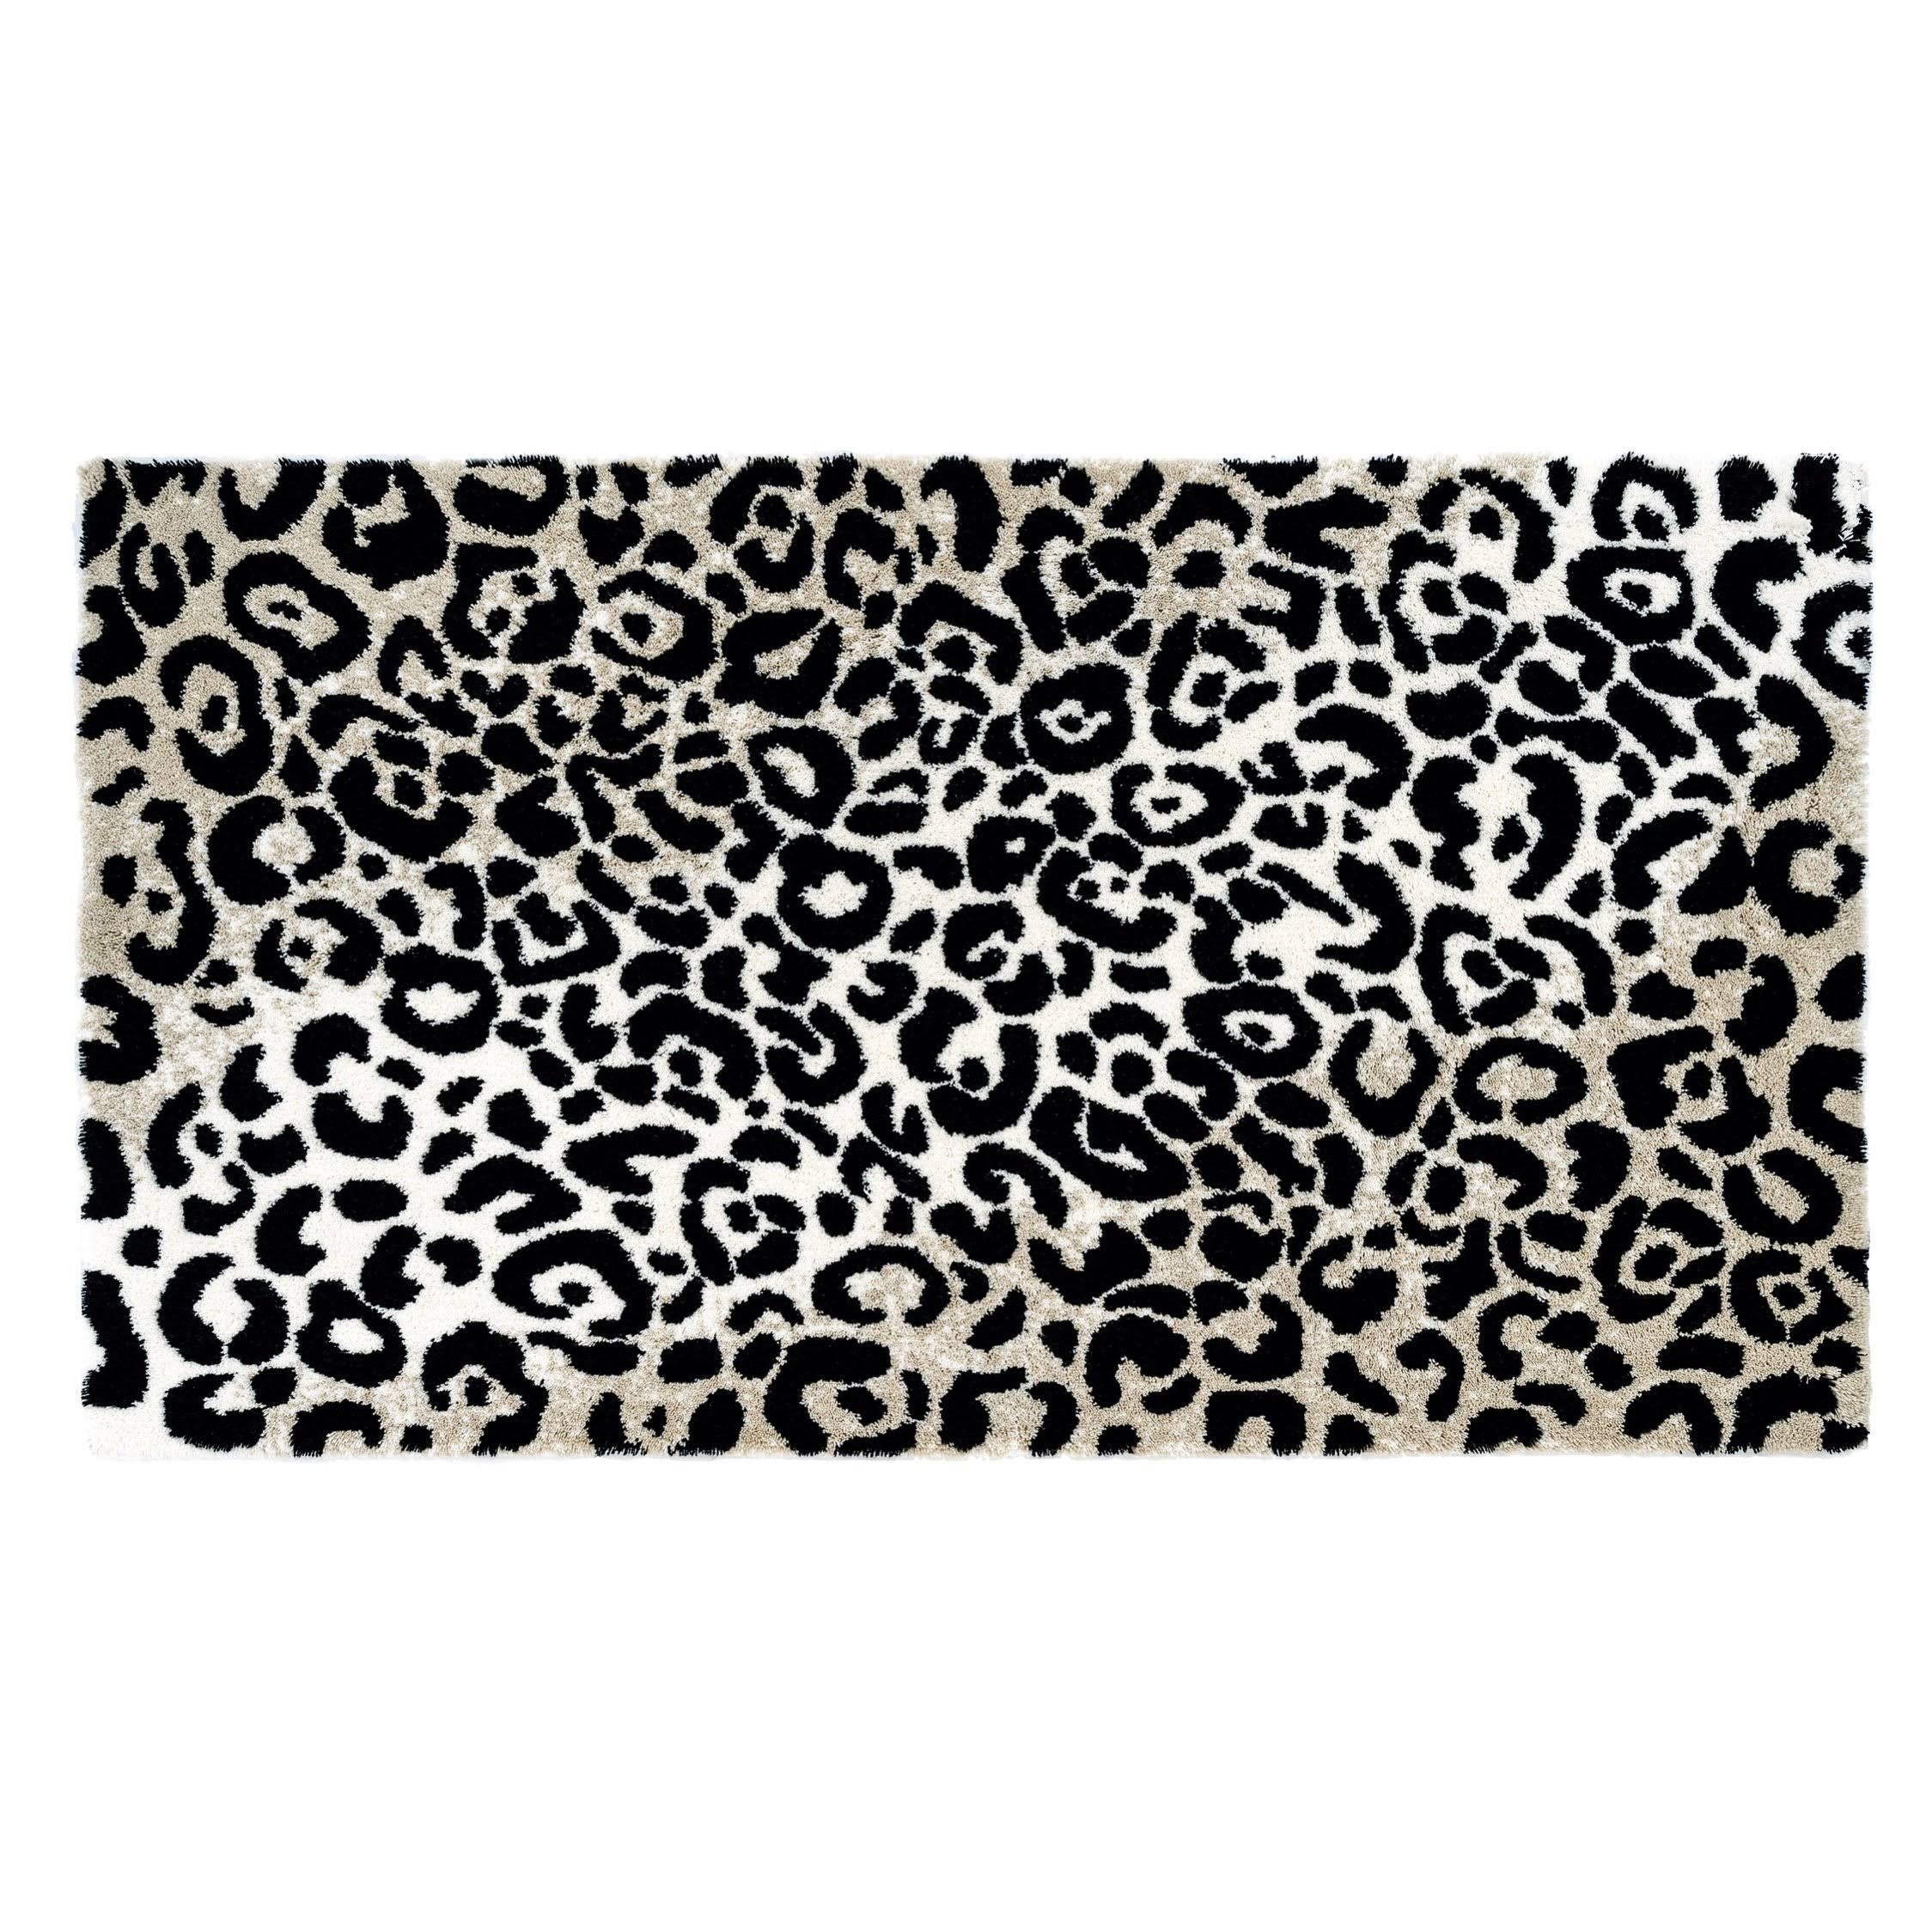 Abyss & Habidecor Leopard Bath Rug - Size: 23" x 39"